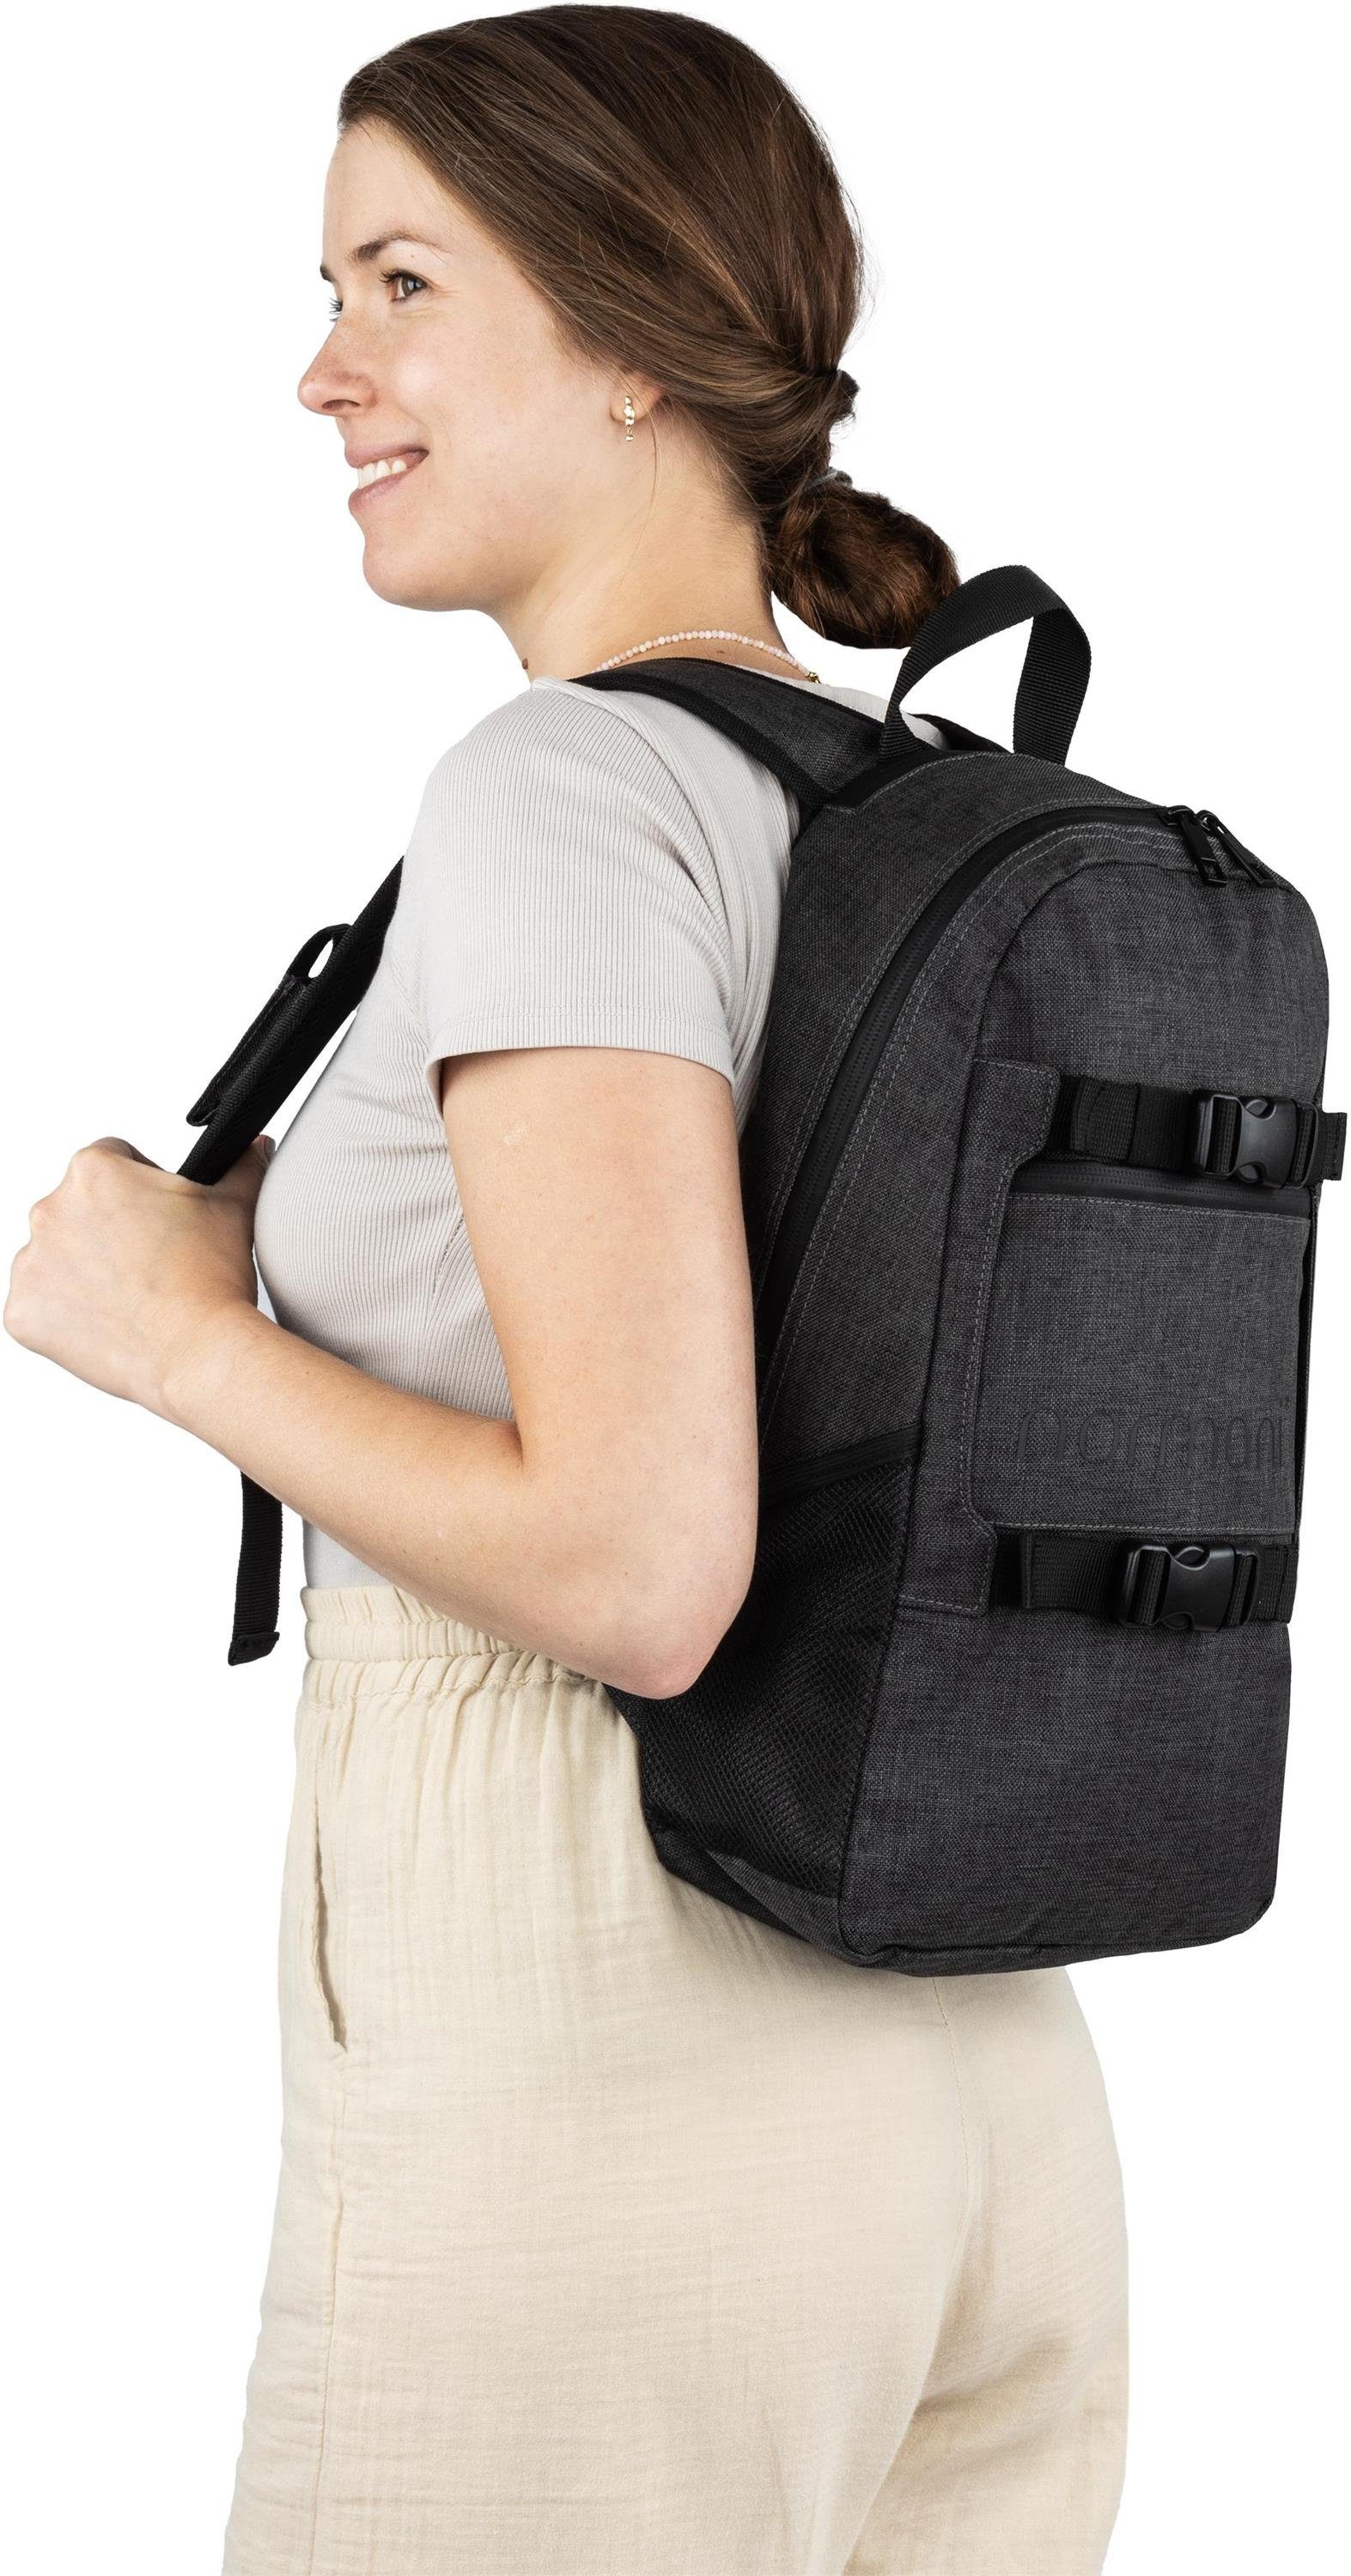 und Trolley Rucksack, Handgepäck mit Trolleyfuktion kleinem Reisetasche Rucksackfuntkion normani Rucksack Maßen mit in